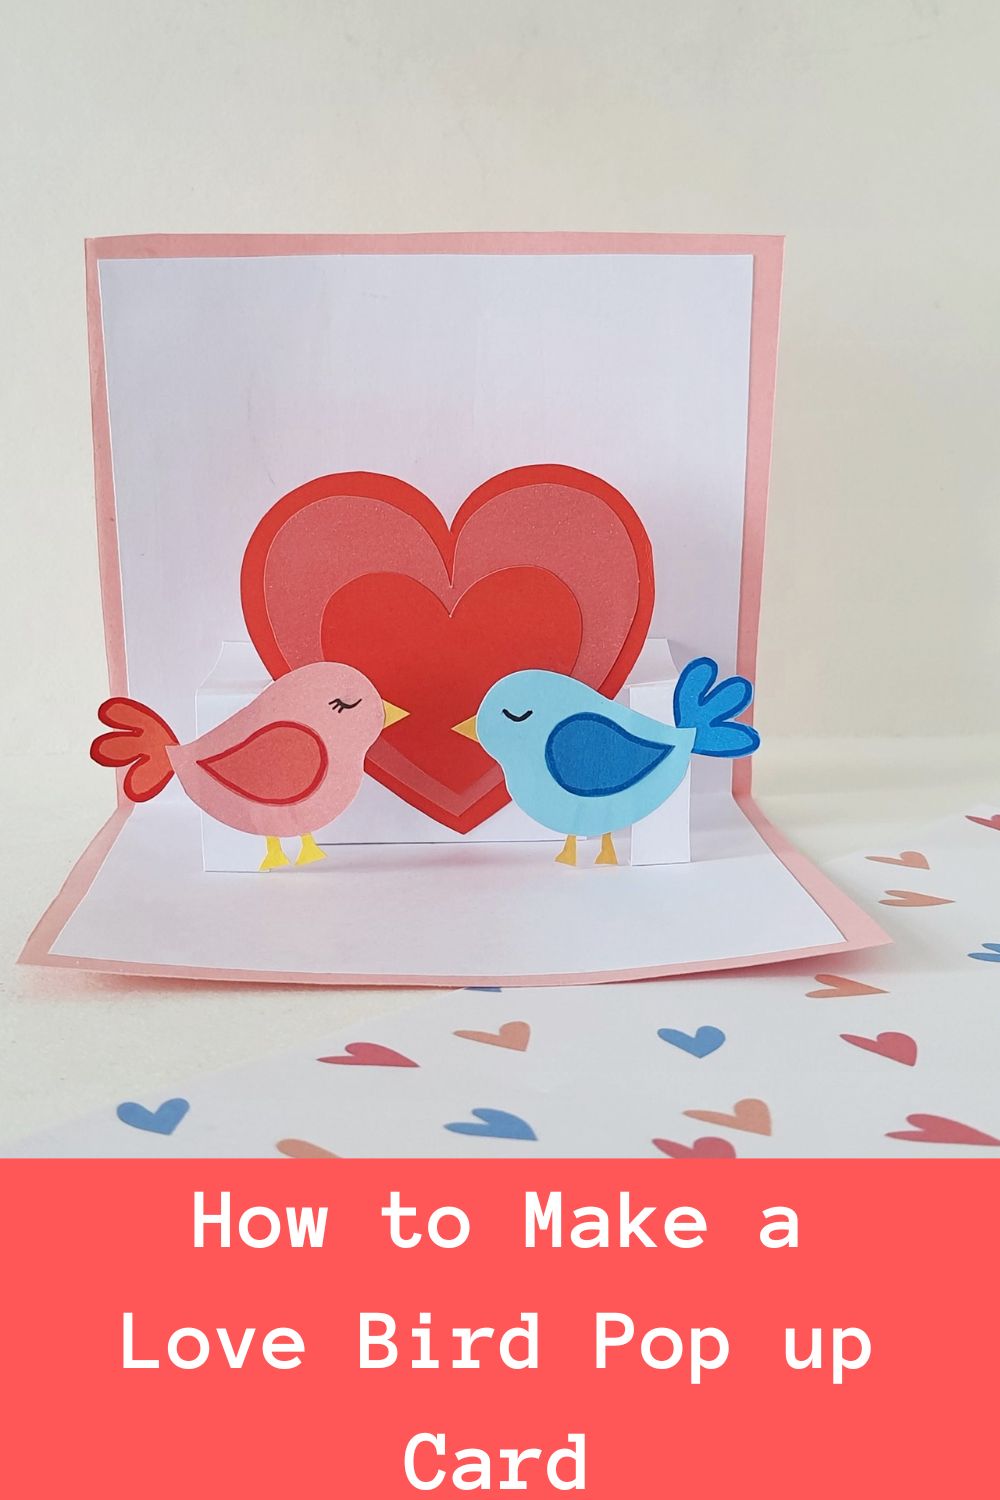 How to Make a Love Bird Pop up Card